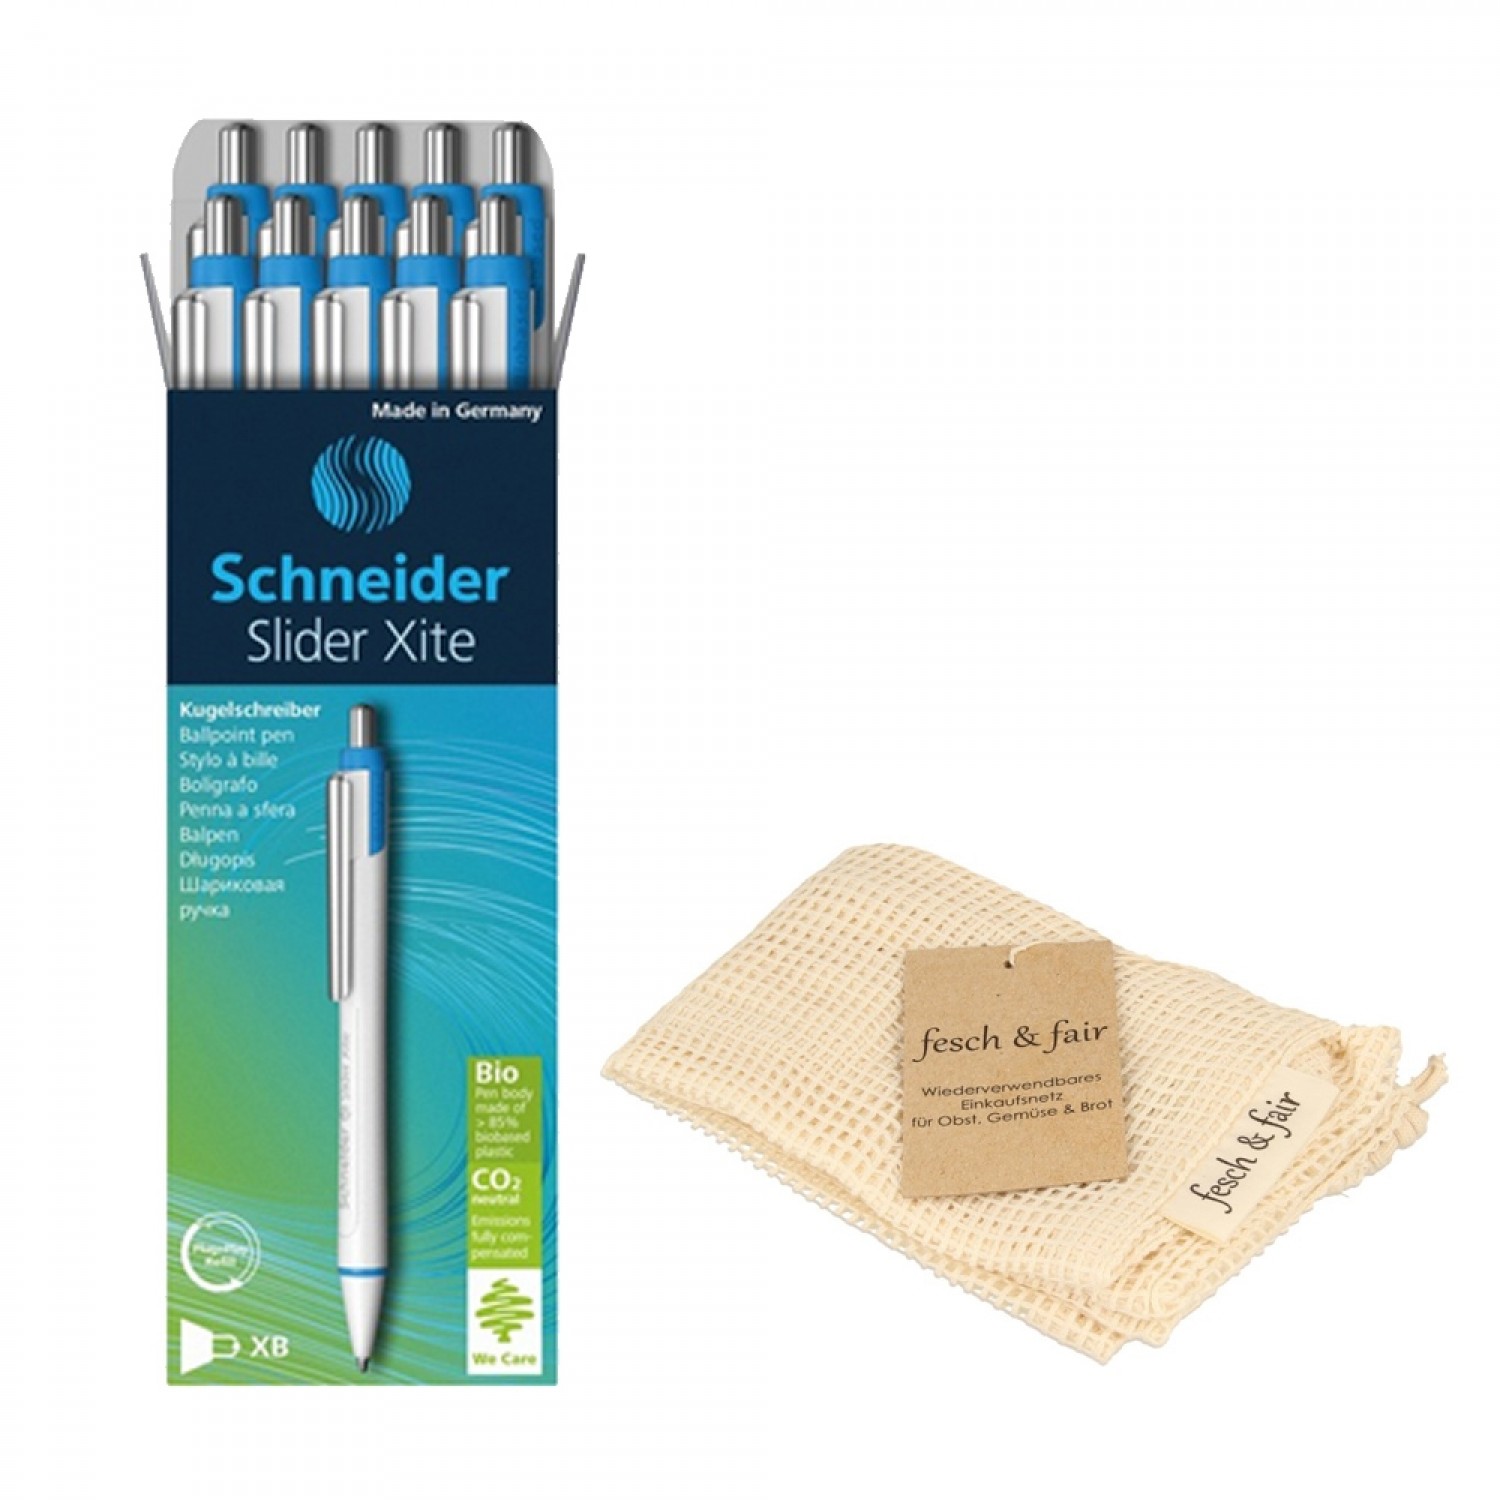 10 Kugelschreiber Schneider Slider Xite in Bio Einkaufsnetz